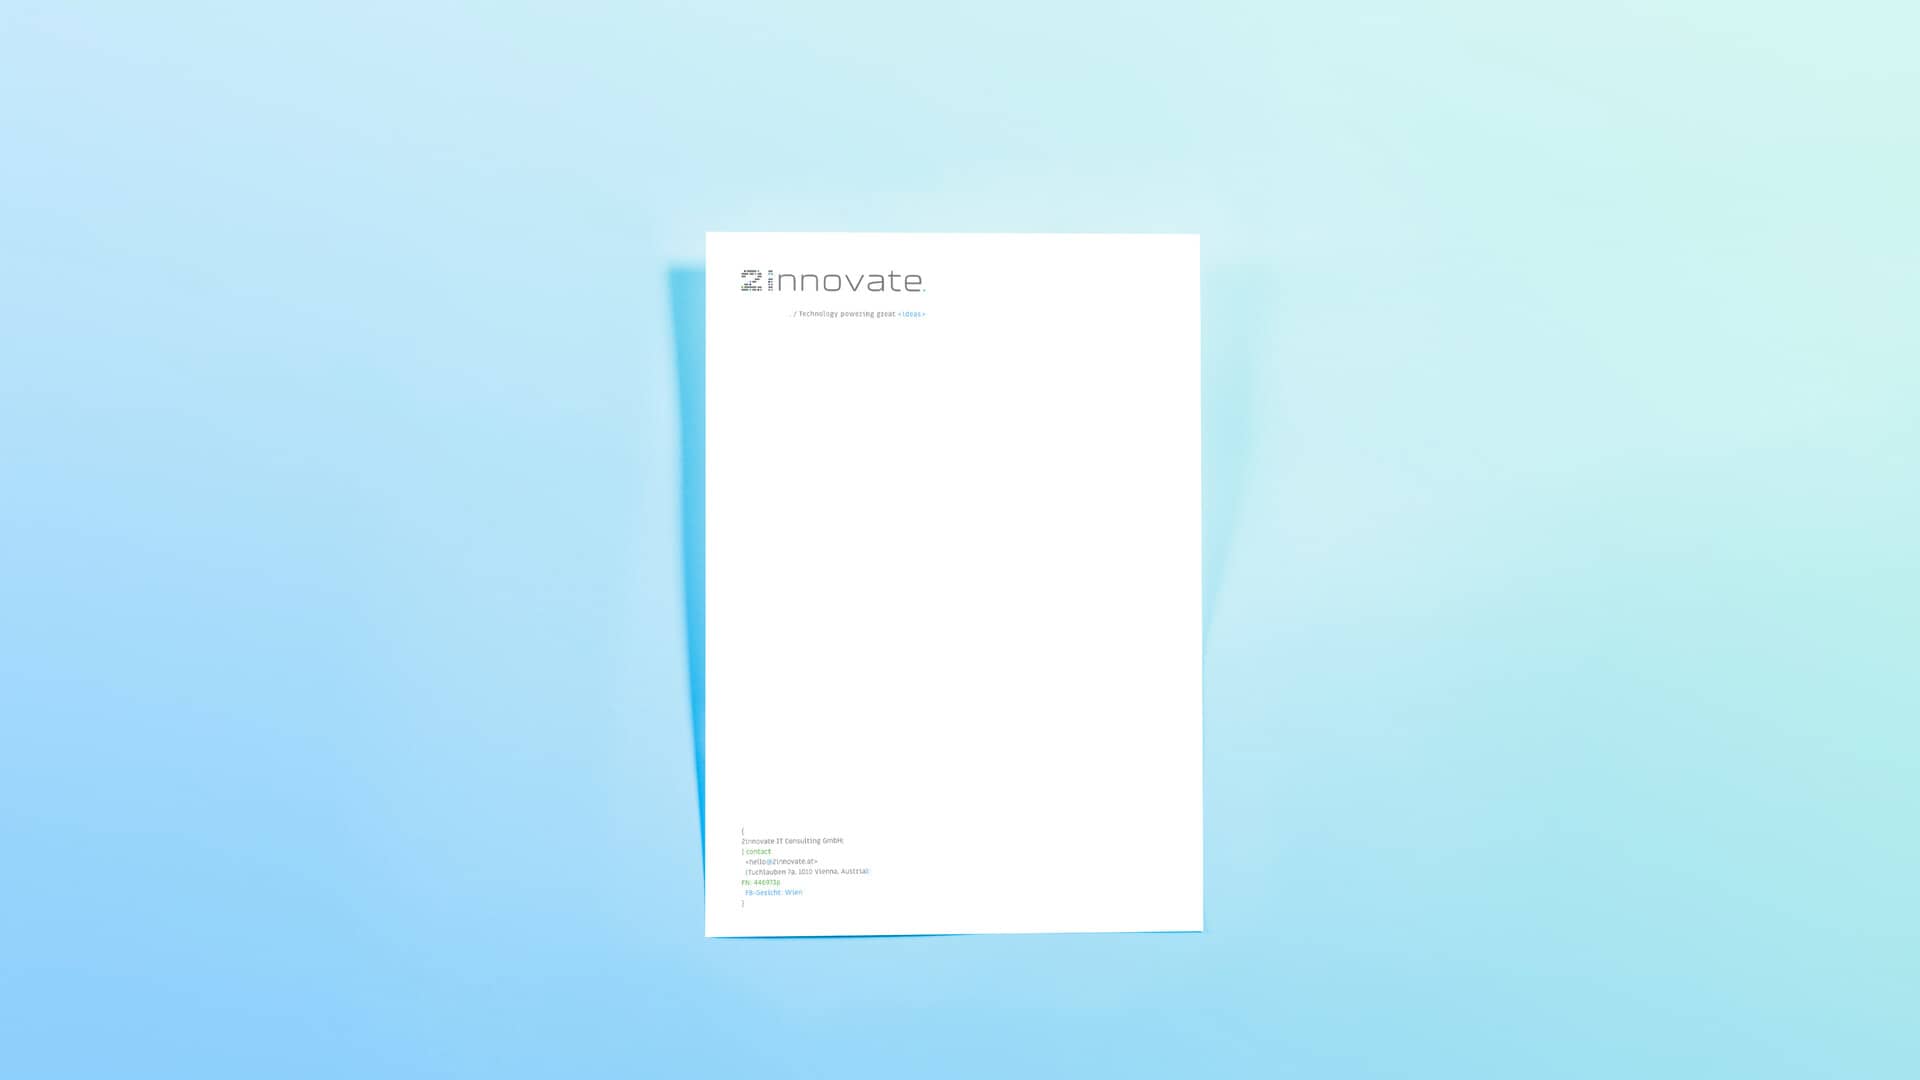 2innovate's letterhead design